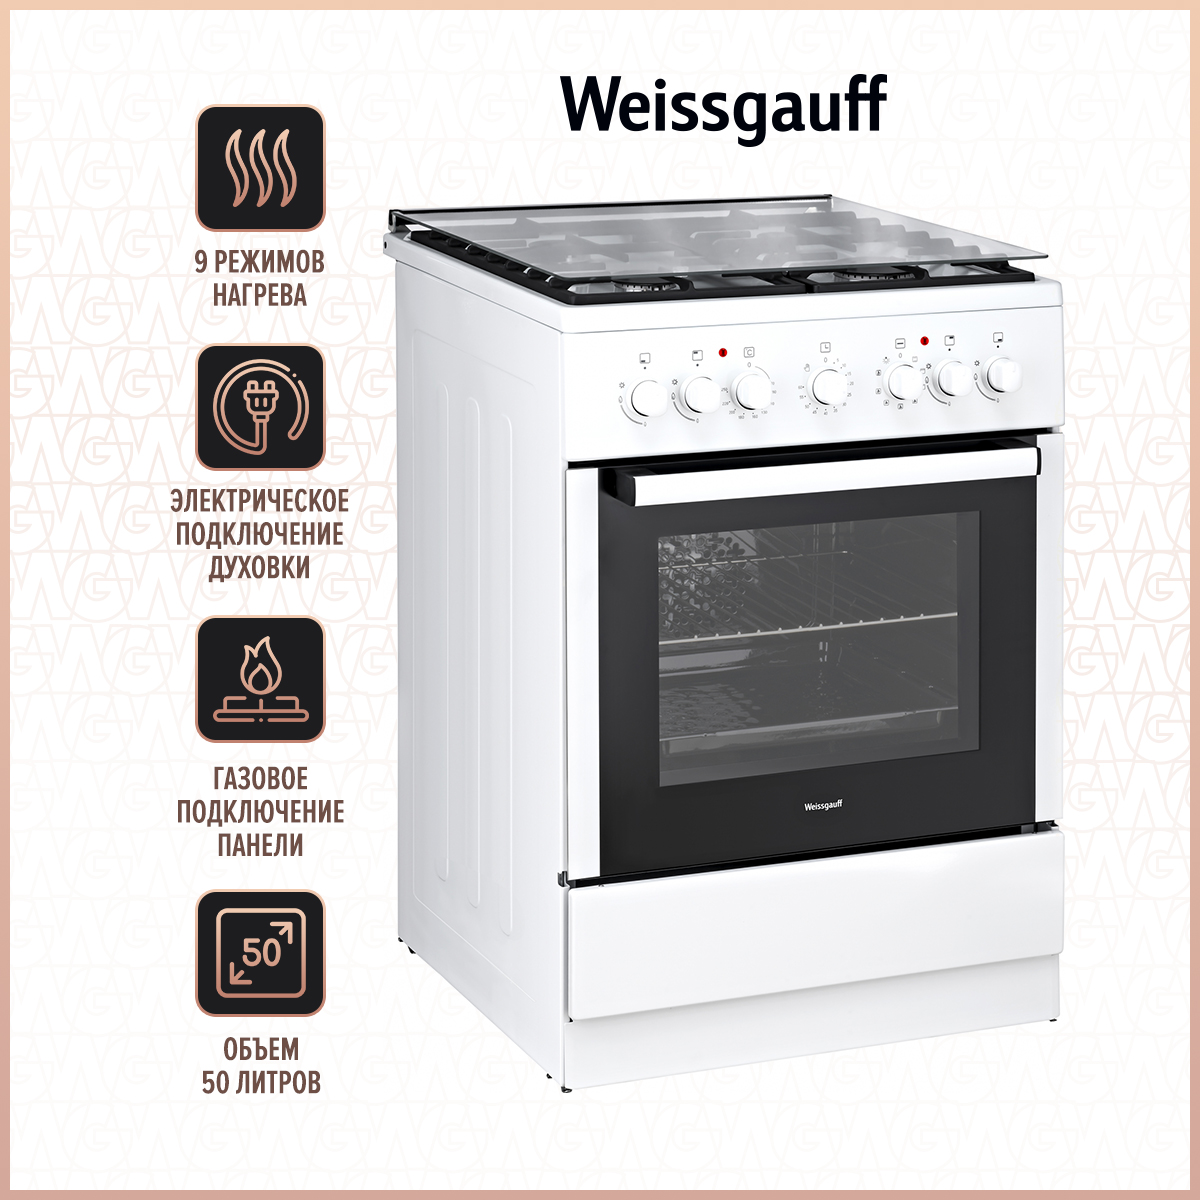 Комбинированная плита Weissgauff WCS K1K62 WGM White комбинированная плита weissgauff wcs k1k62 wgm